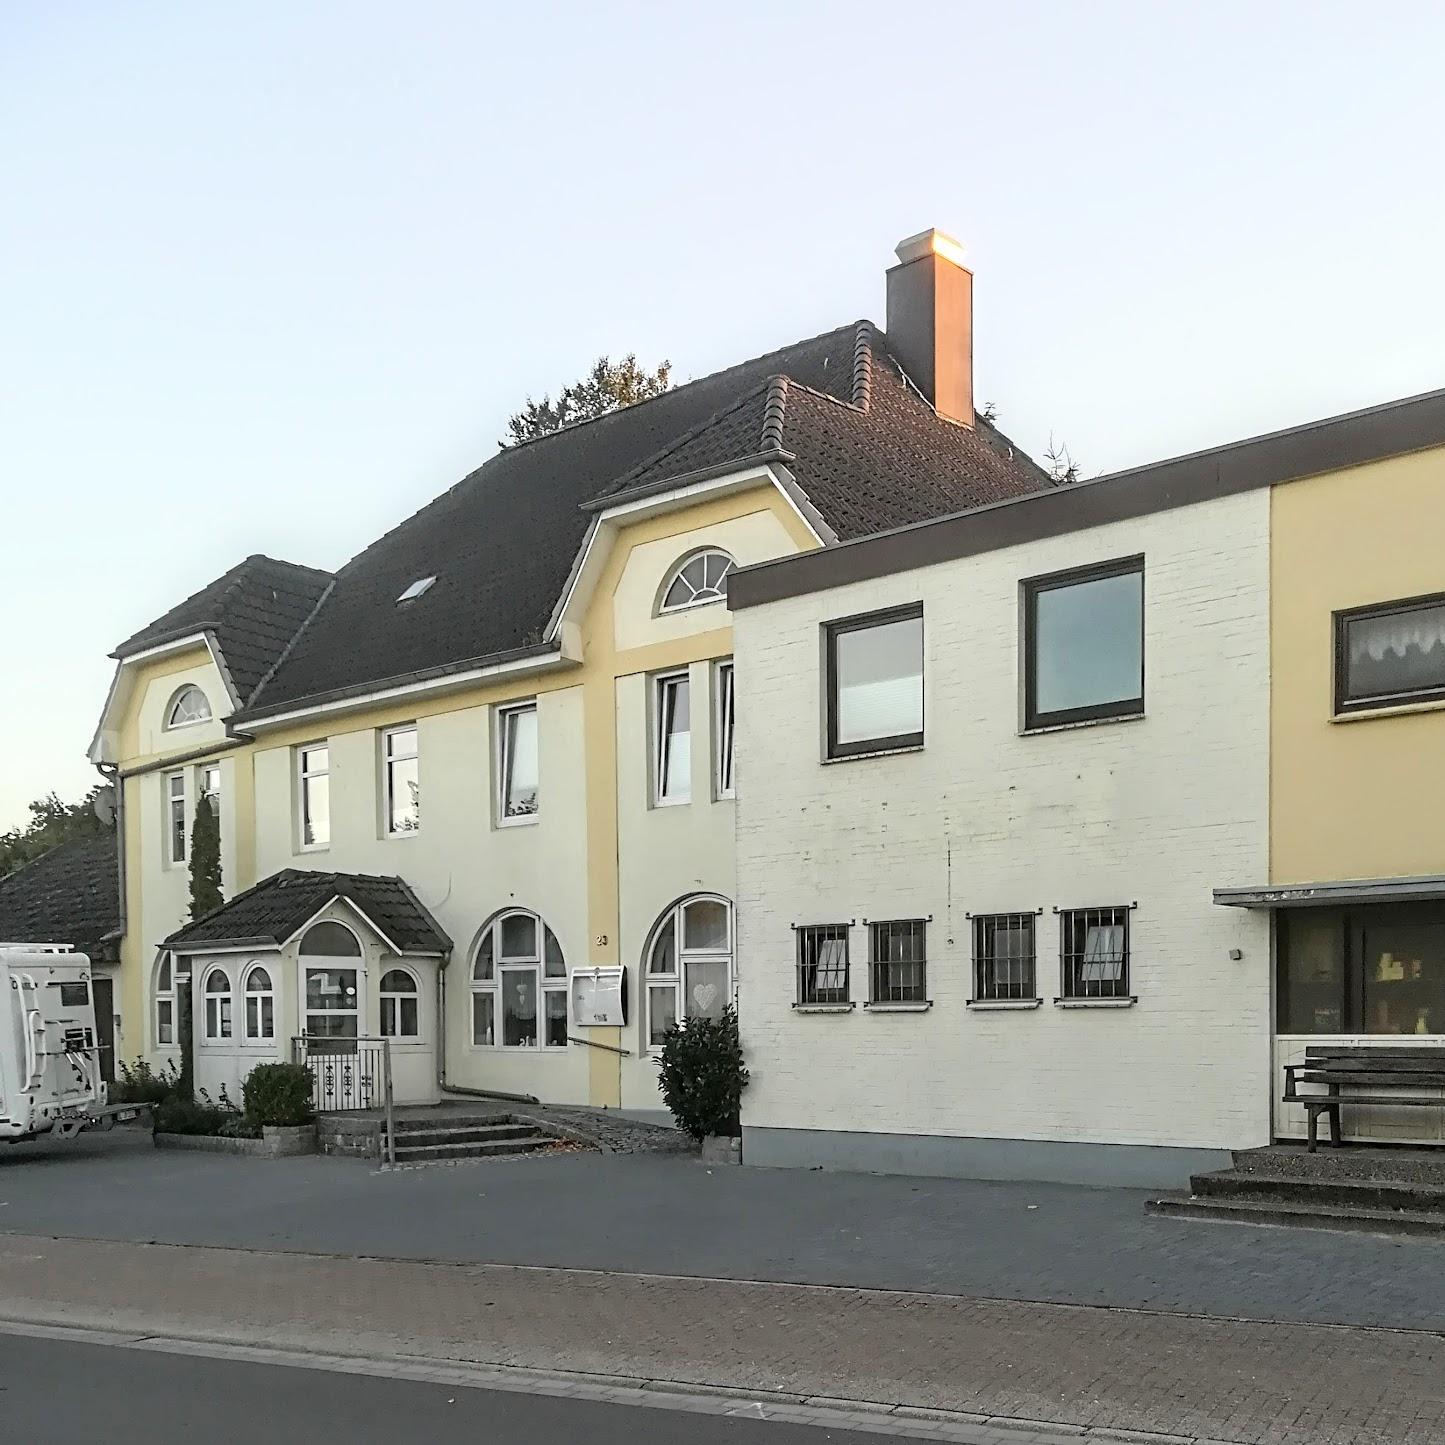 Restaurant "Landgasthof Bussmann e.K" in Wallsbüll